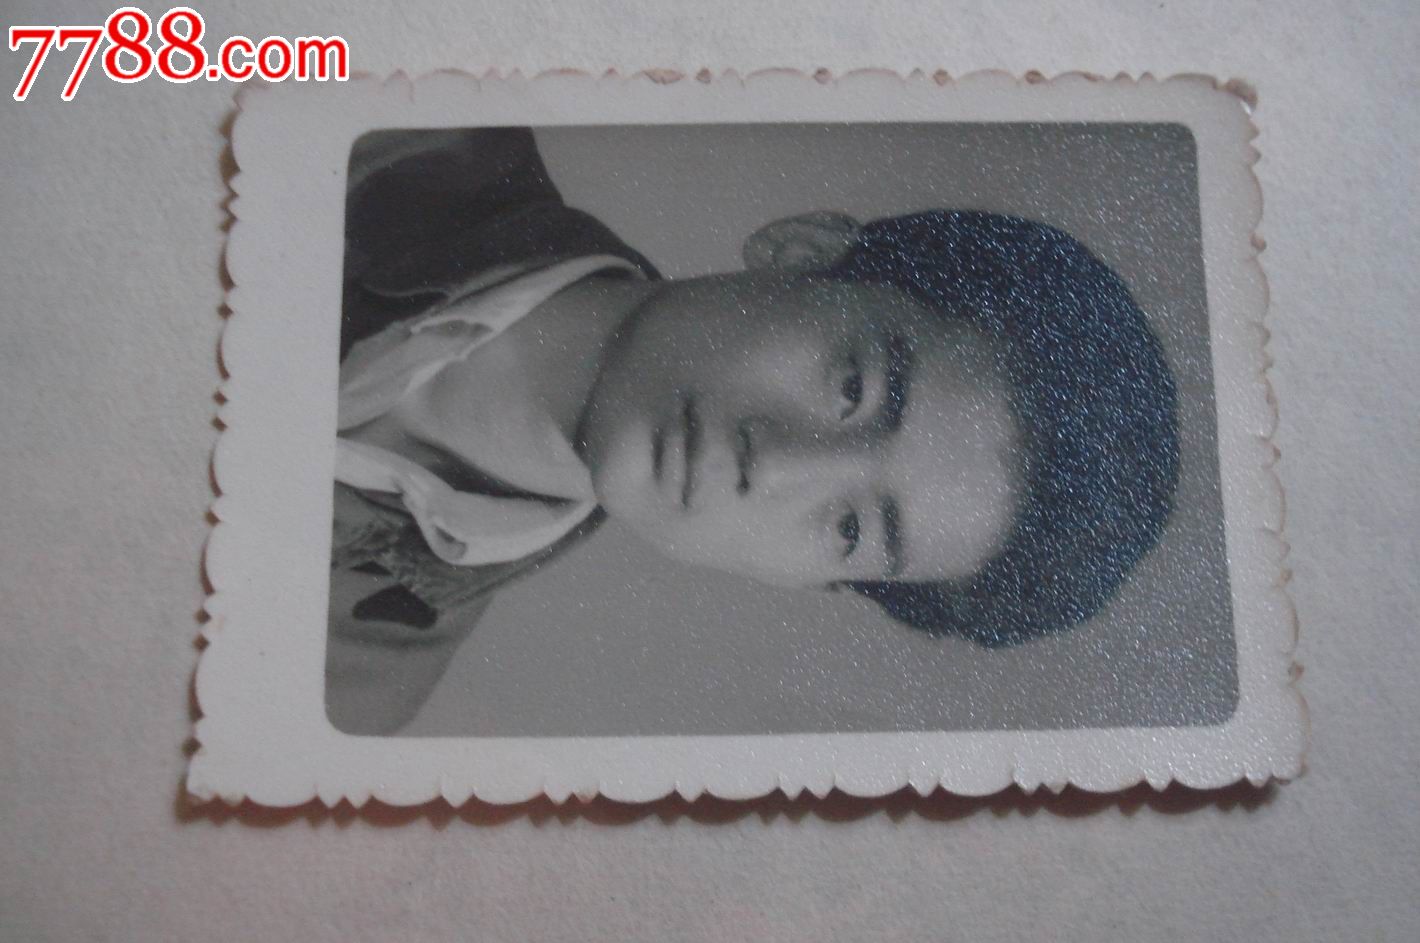 中国男子个人老照片图片